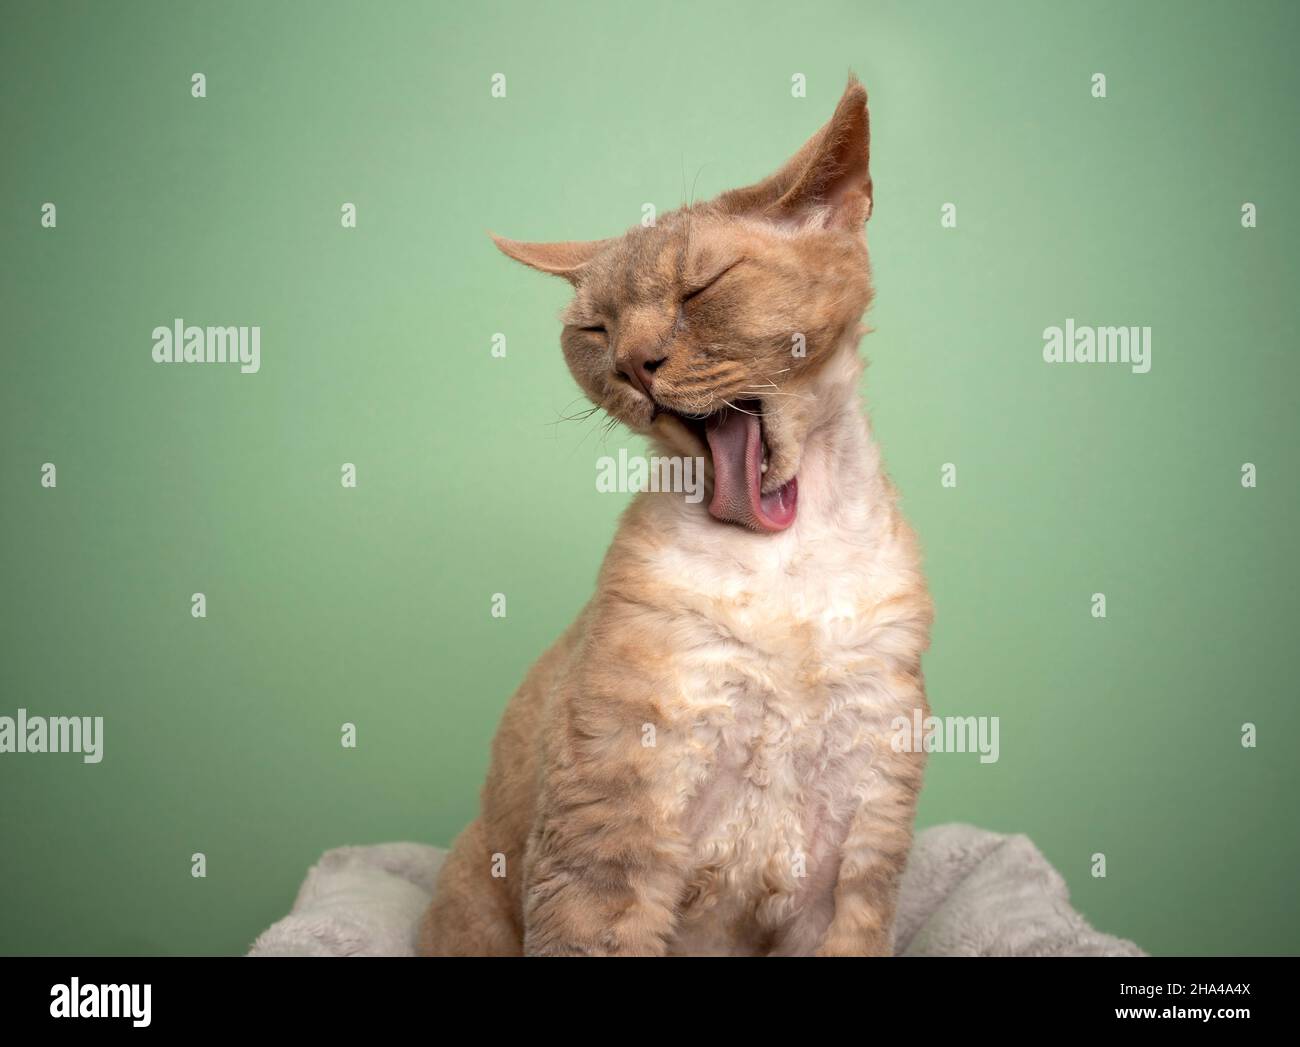 lilla di fawn devon rex gatto grooming lecking pelliccia con lingua lunga che guarda divertente su sfondo verde menta Foto Stock